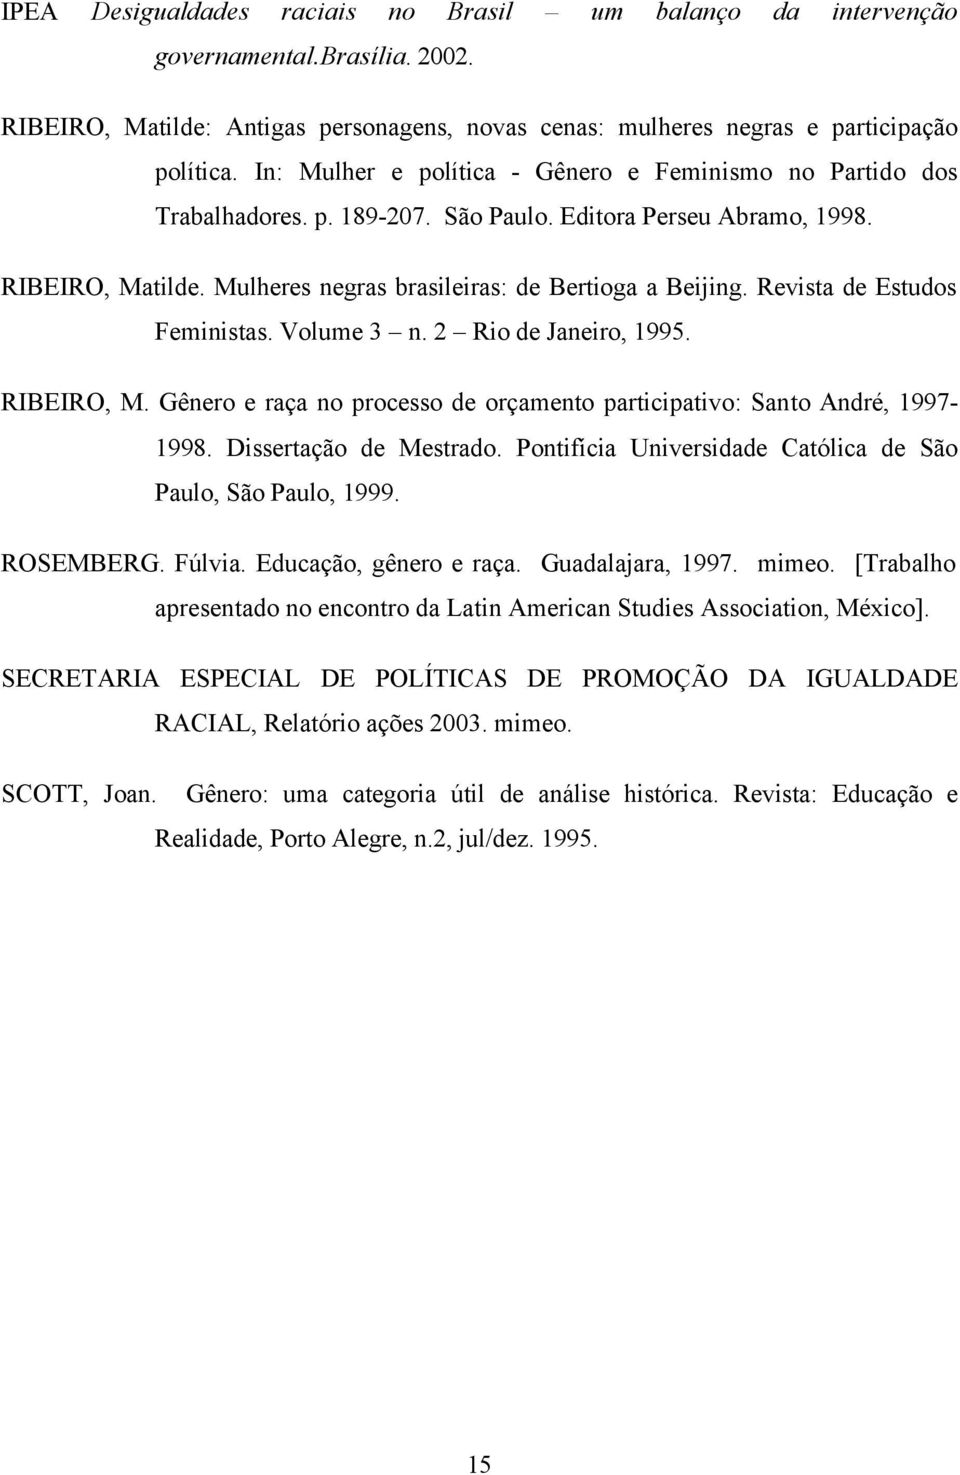 Revista de Estudos Feministas. Volume 3 n. 2 Rio de Janeiro, 1995. RIBEIRO, M. Gênero e raça no processo de orçamento participativo: Santo André, 1997-1998. Dissertação de Mestrado.